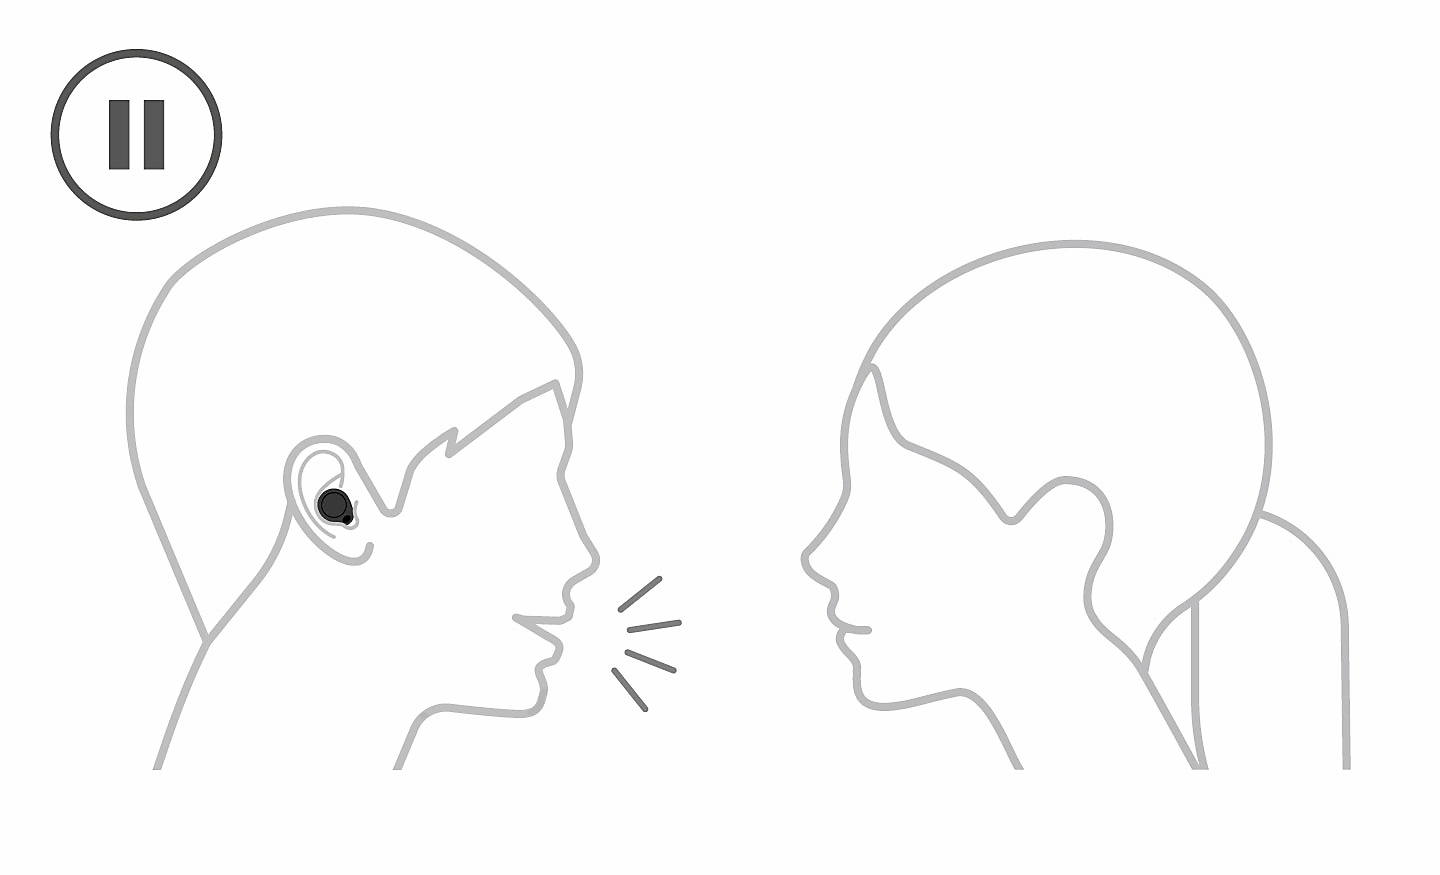 رسم خطي لشخص يرتدي سماعات رأس يتحدث إلى شخص بدون سماعات رأس. أيقونة إيقاف مؤقت في أعلى اليسار